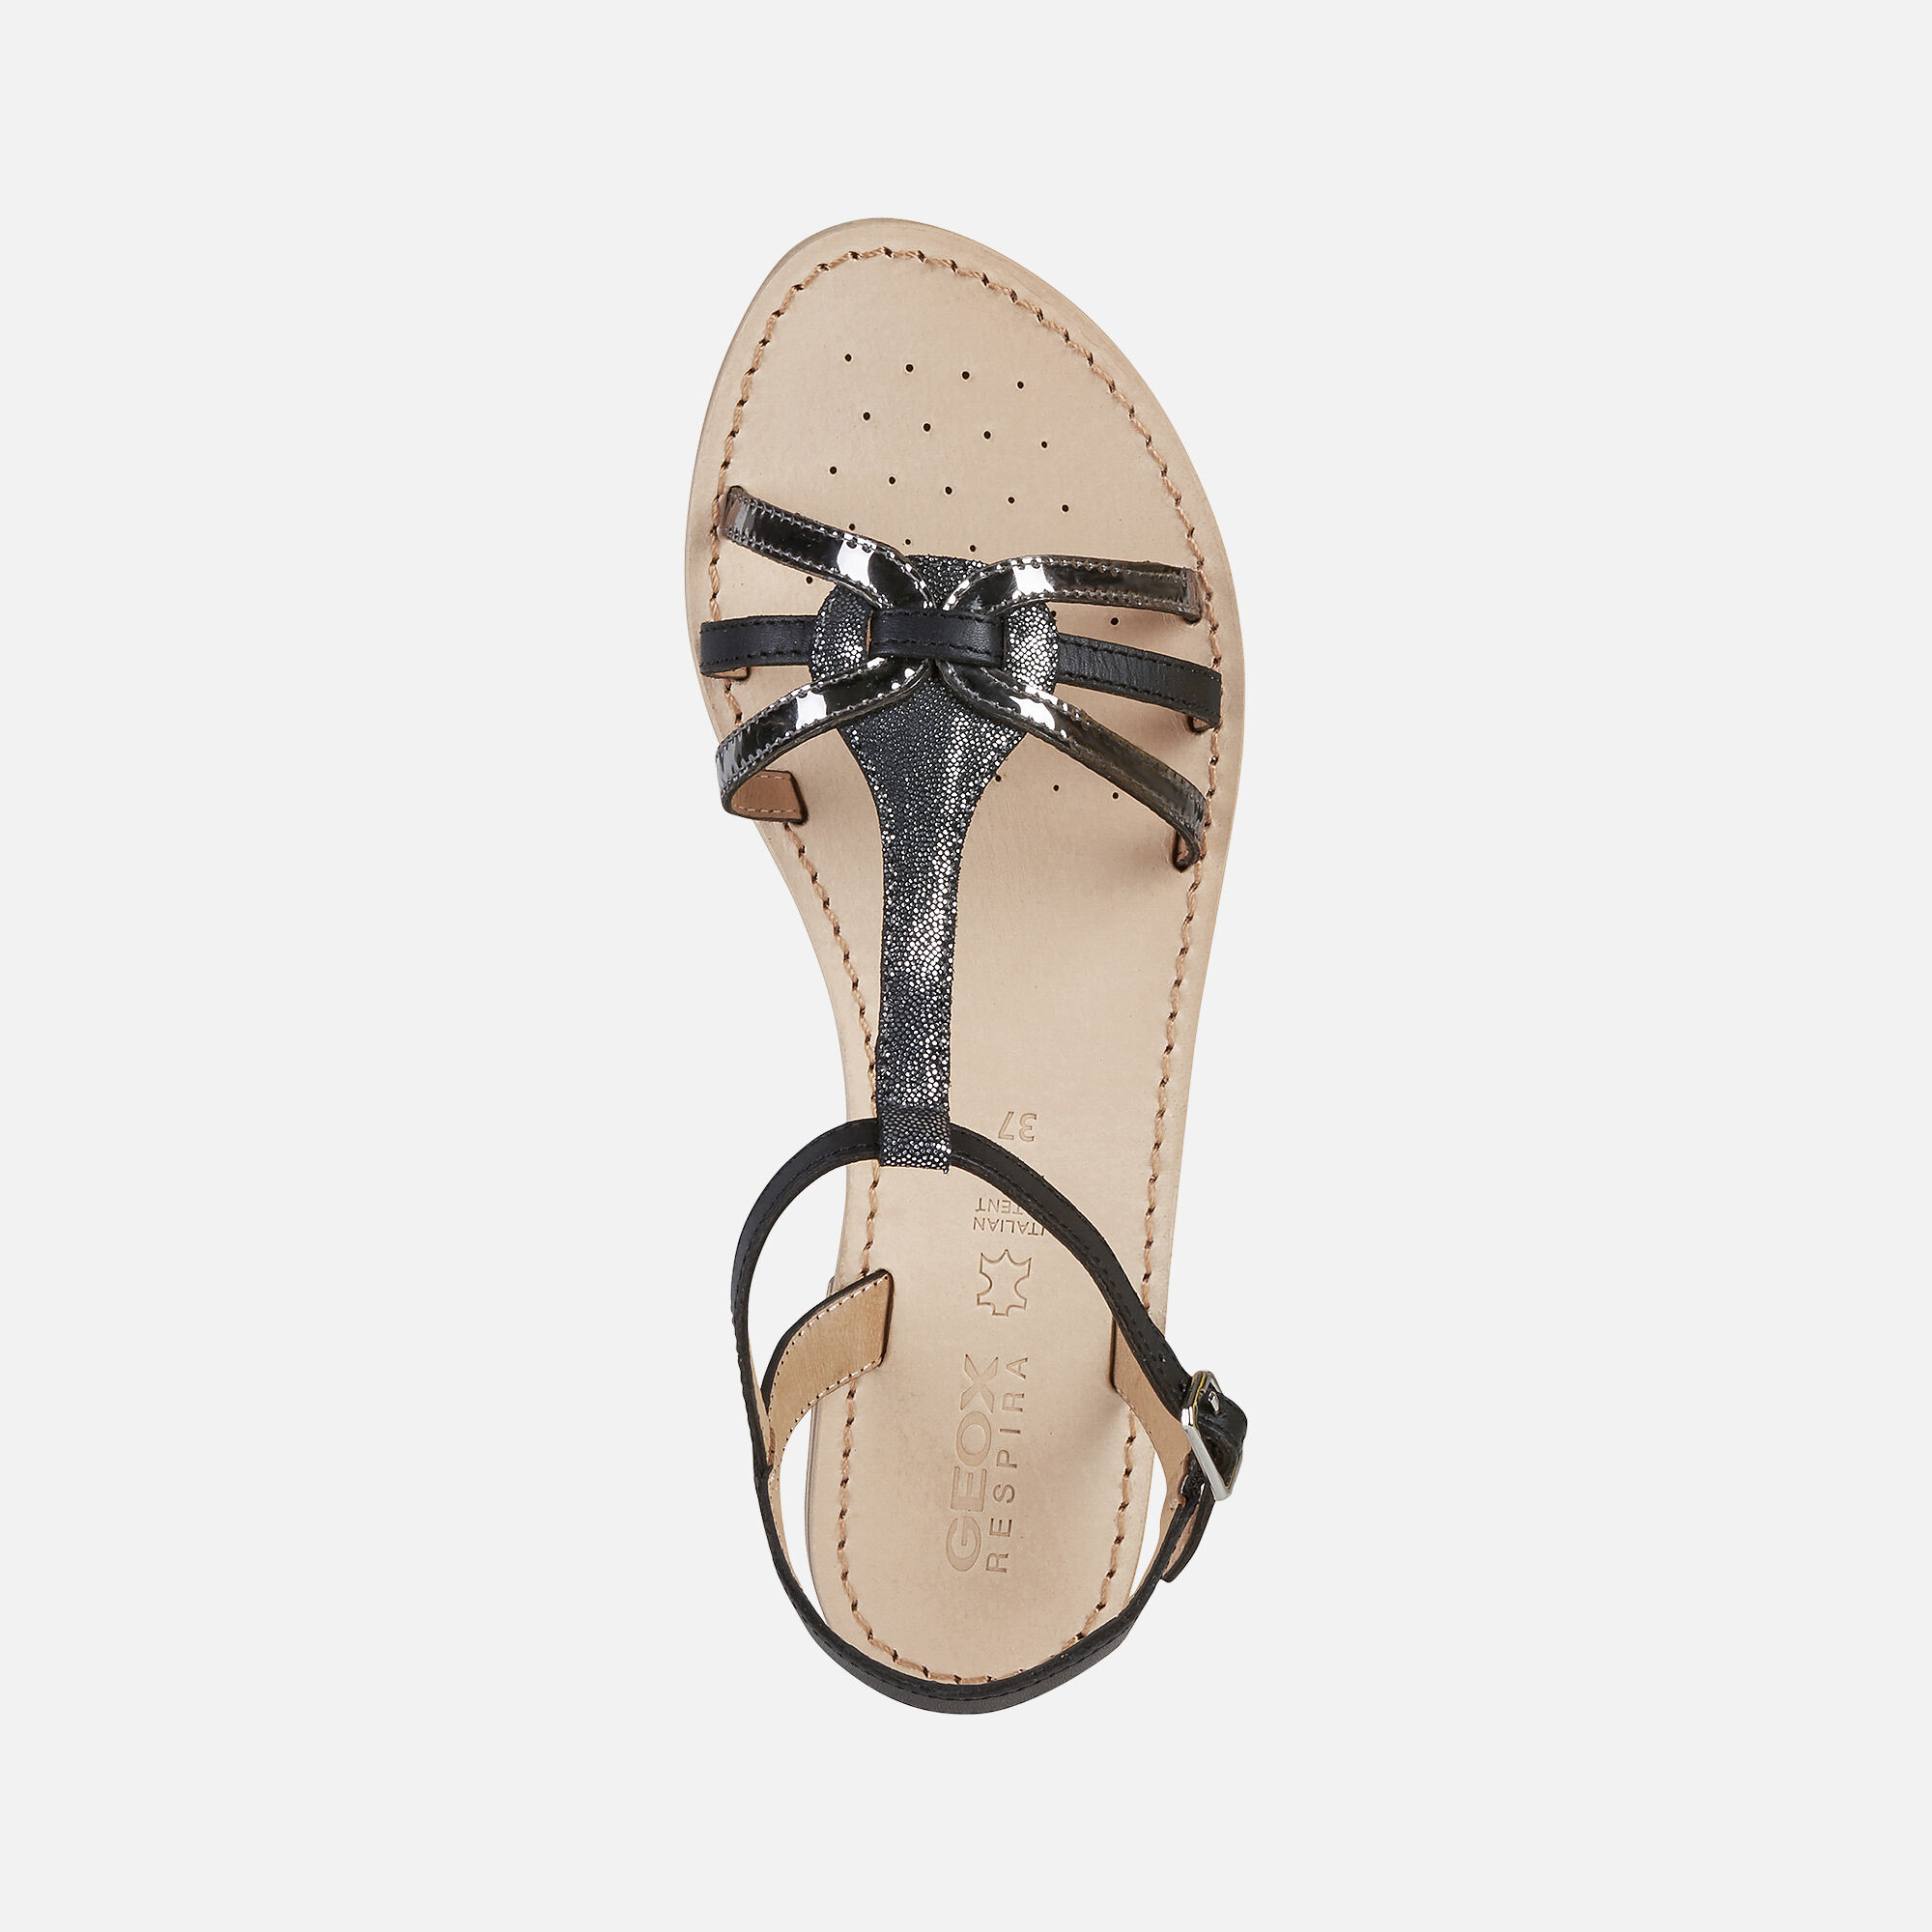 Geox SOZY Woman: Black Sandals | Geox ® SS 20